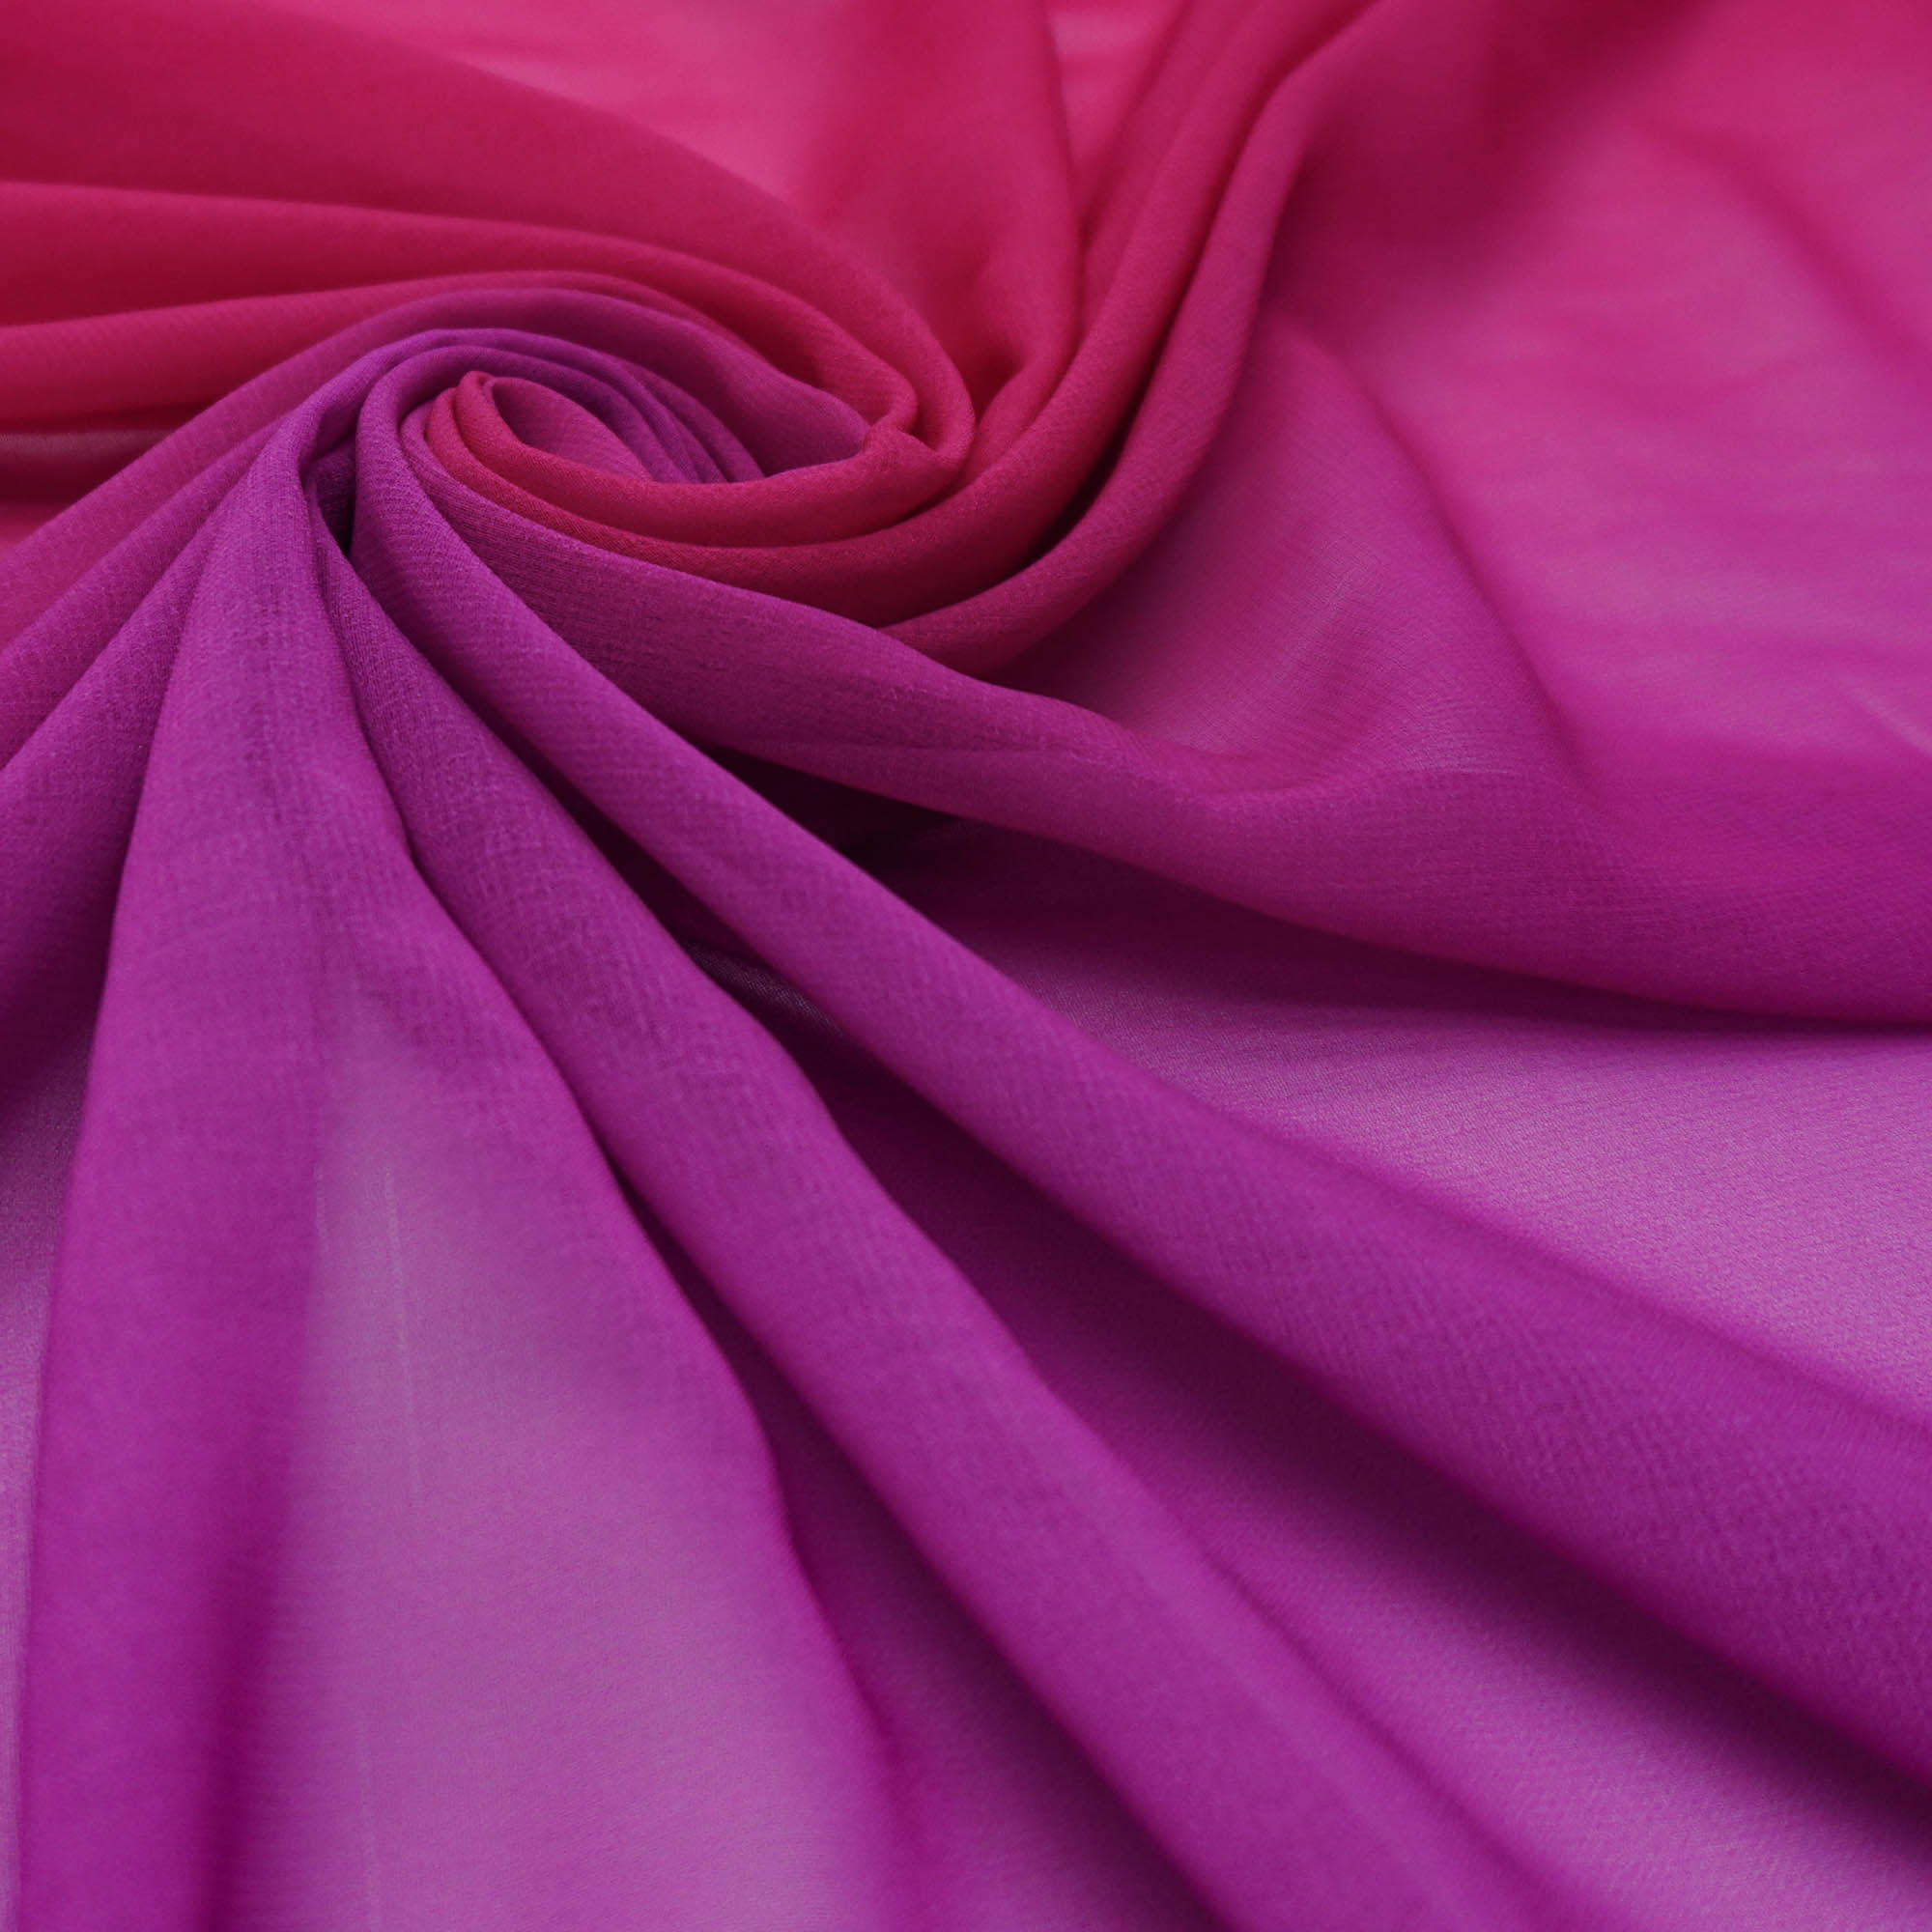 Tecido musseline toque de seda rosa degradê (tecido italiano legítimo)